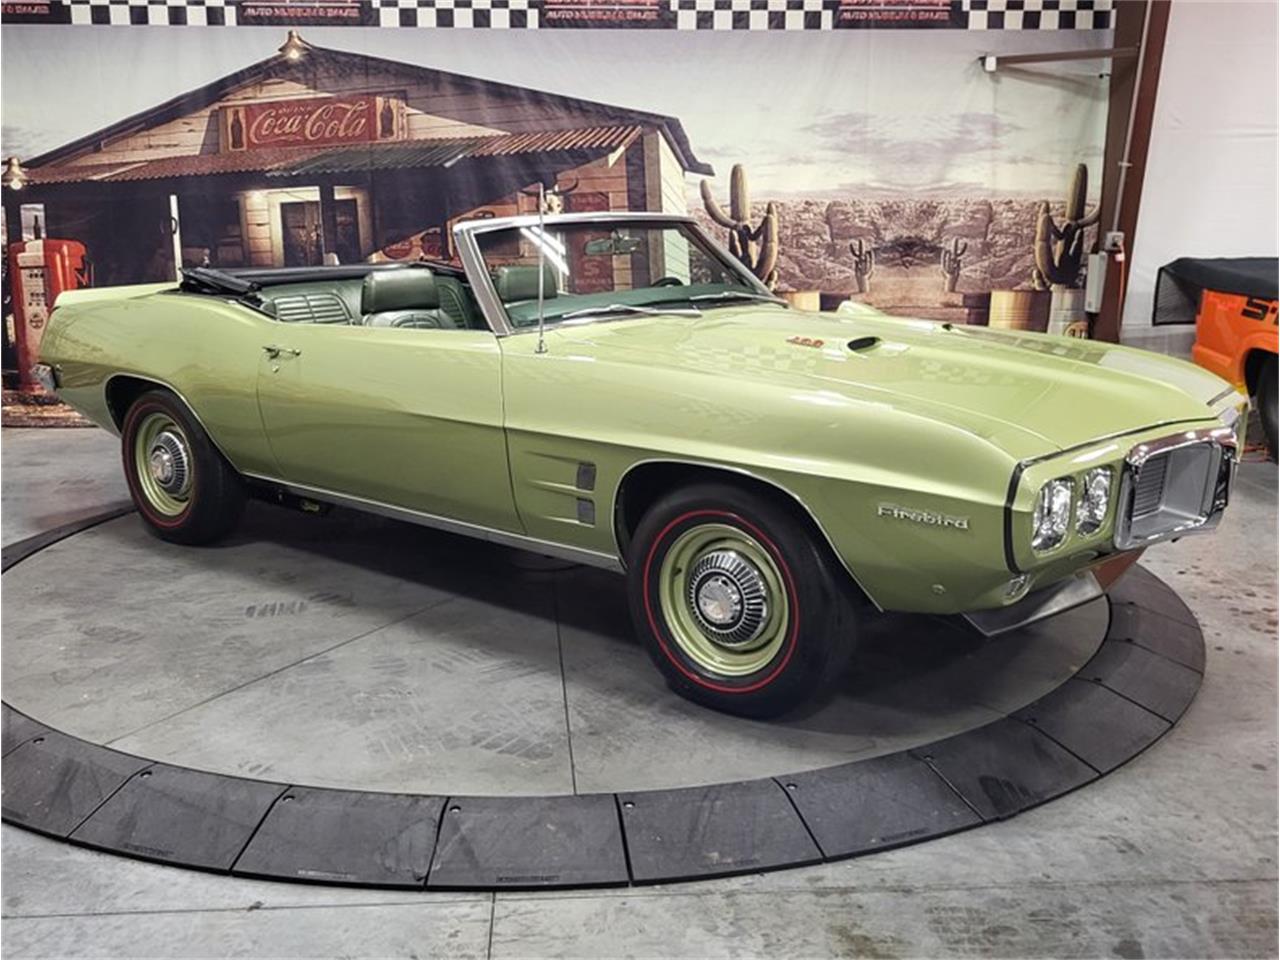 For Sale: 1969 Pontiac Firebird in Bristol, Pennsylvania for sale in Bristol, PA